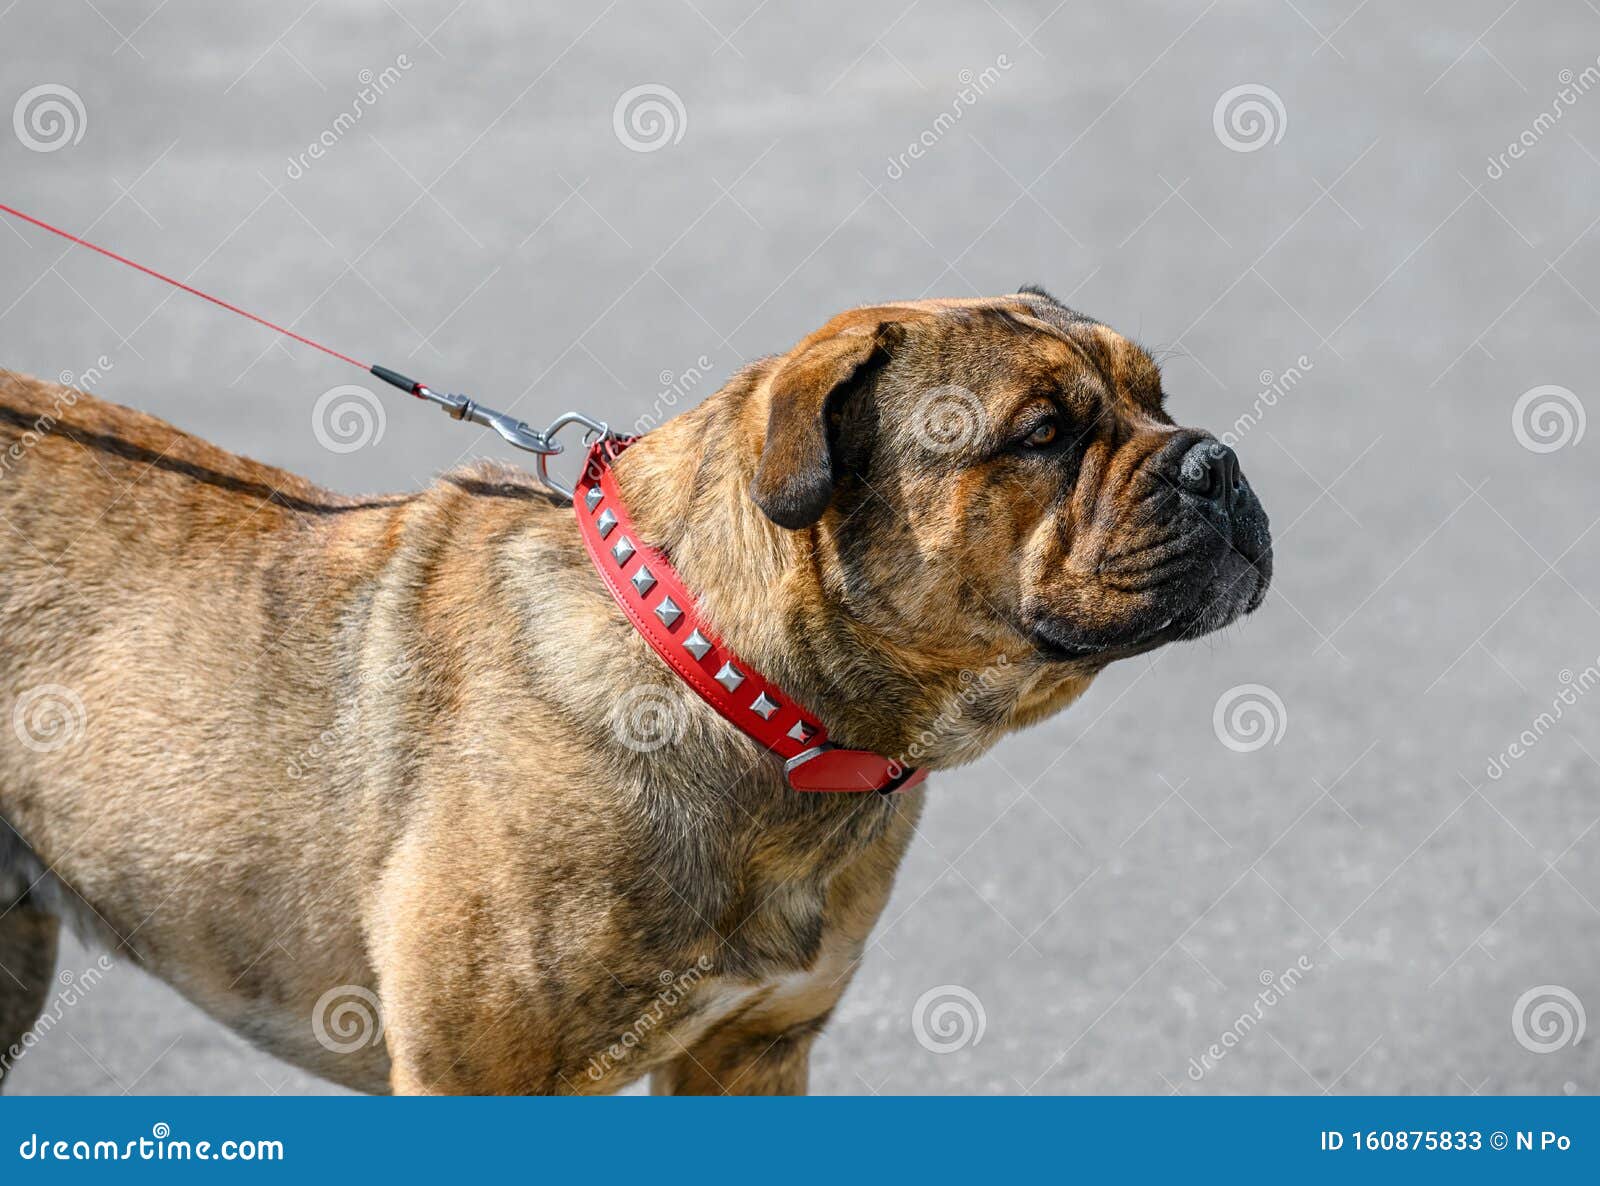 ca de bou  perro de presa mallorquin molossian type breed of dog brindle color  standing on gray street background